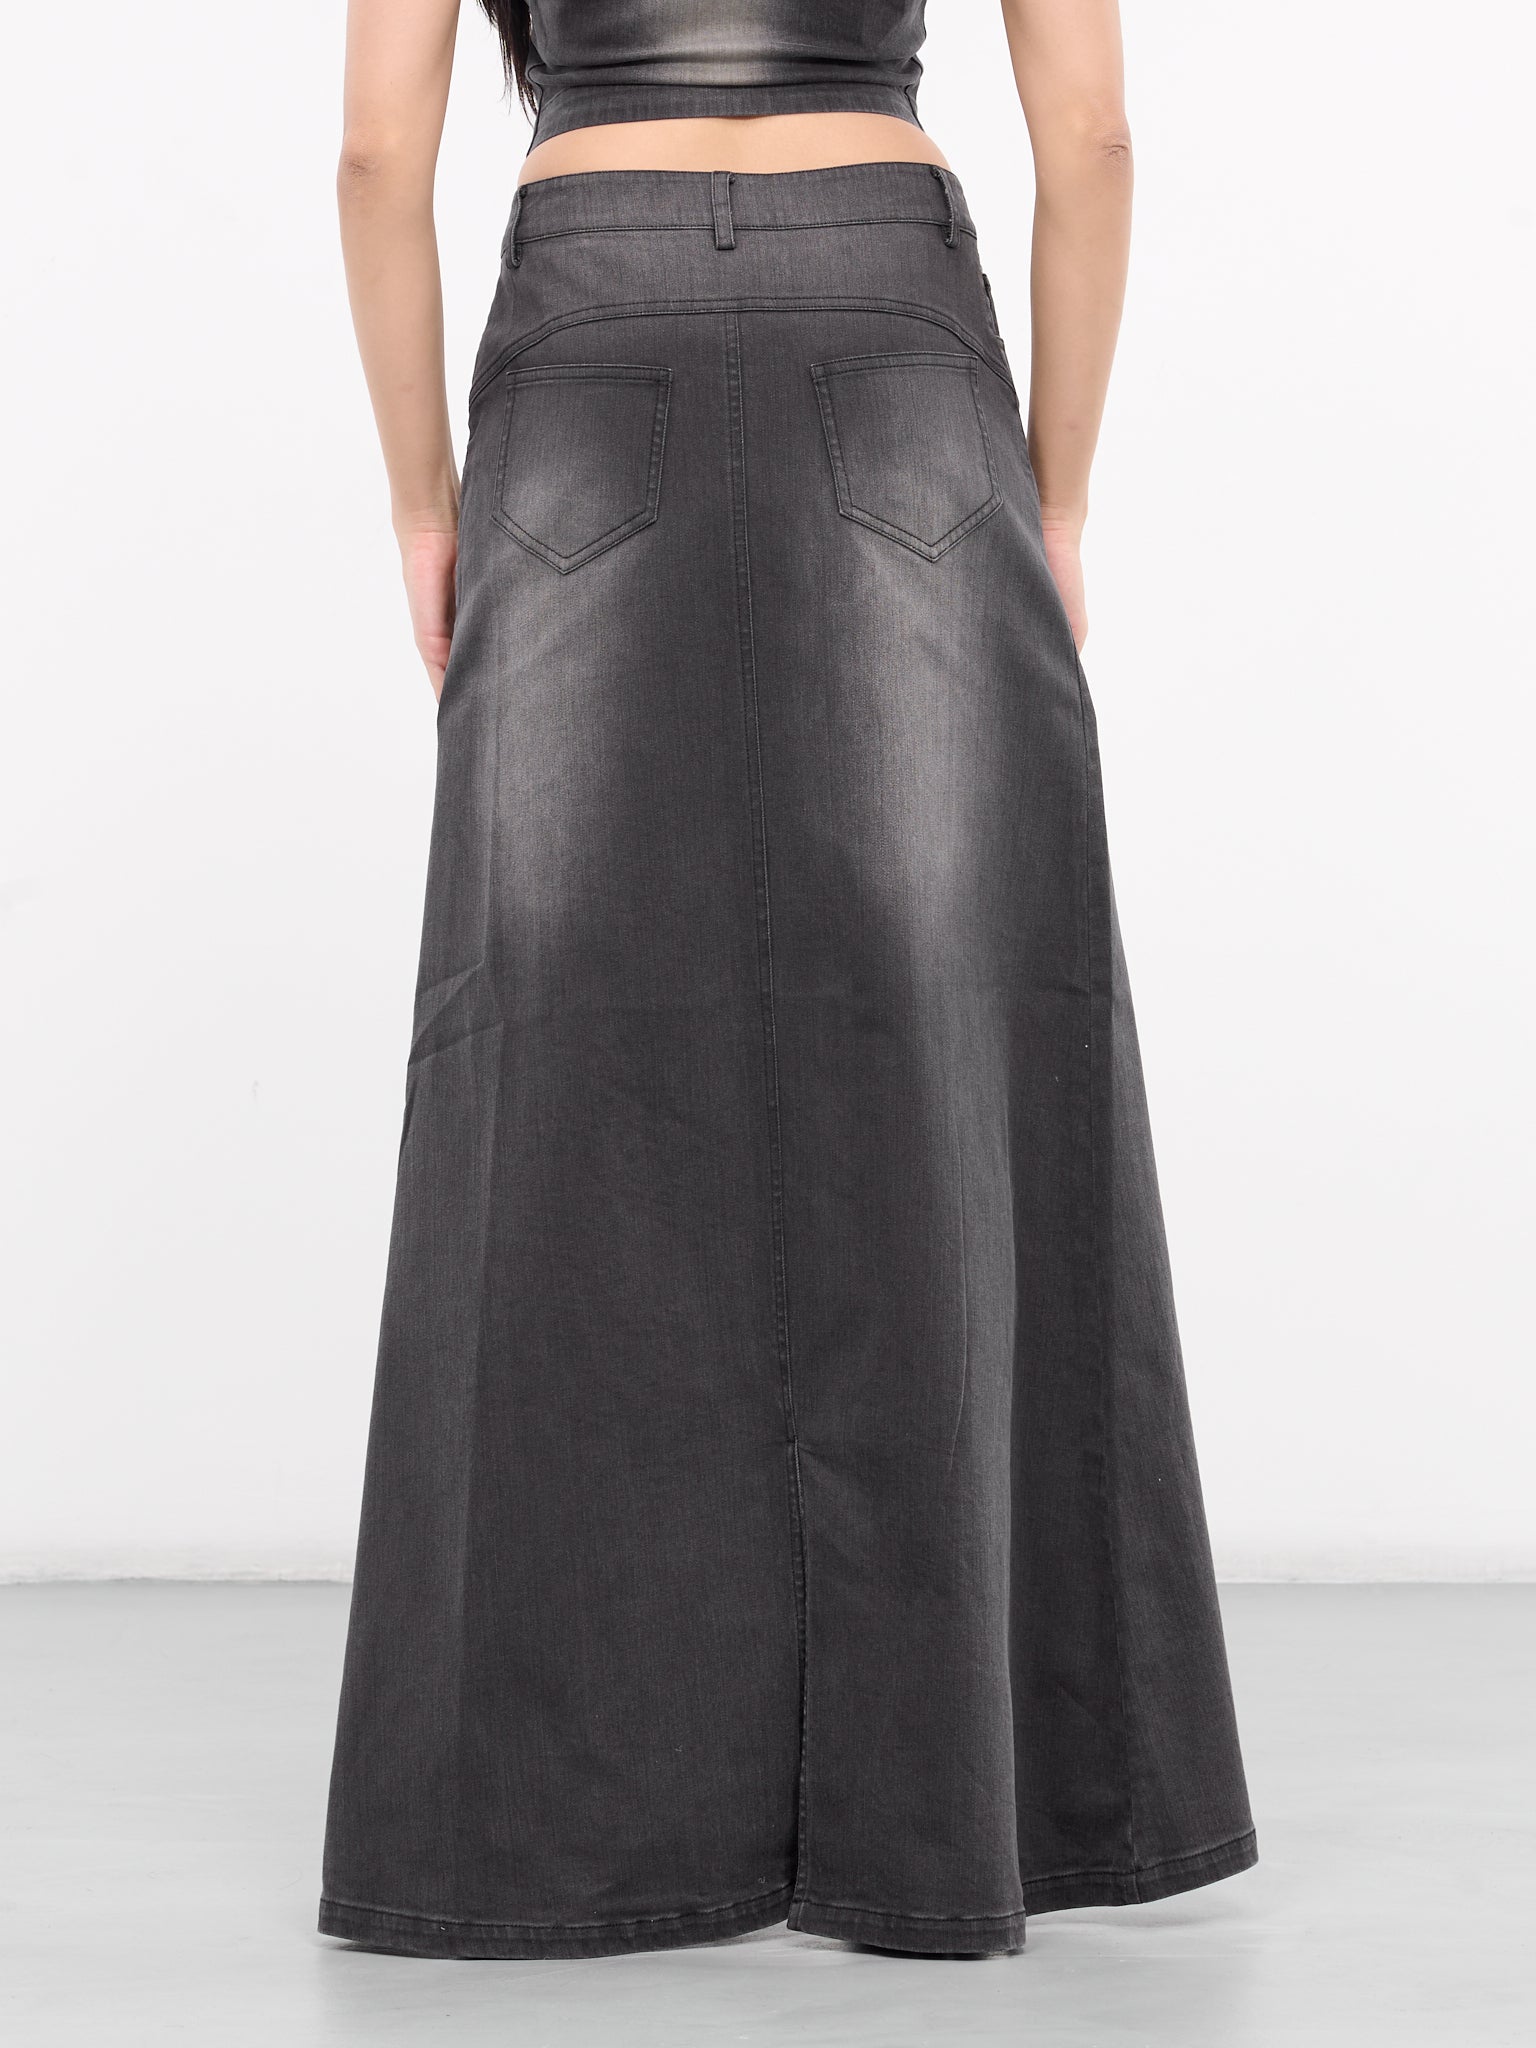 Denim Washed Long Skirt (SK-08BK-BLACK)